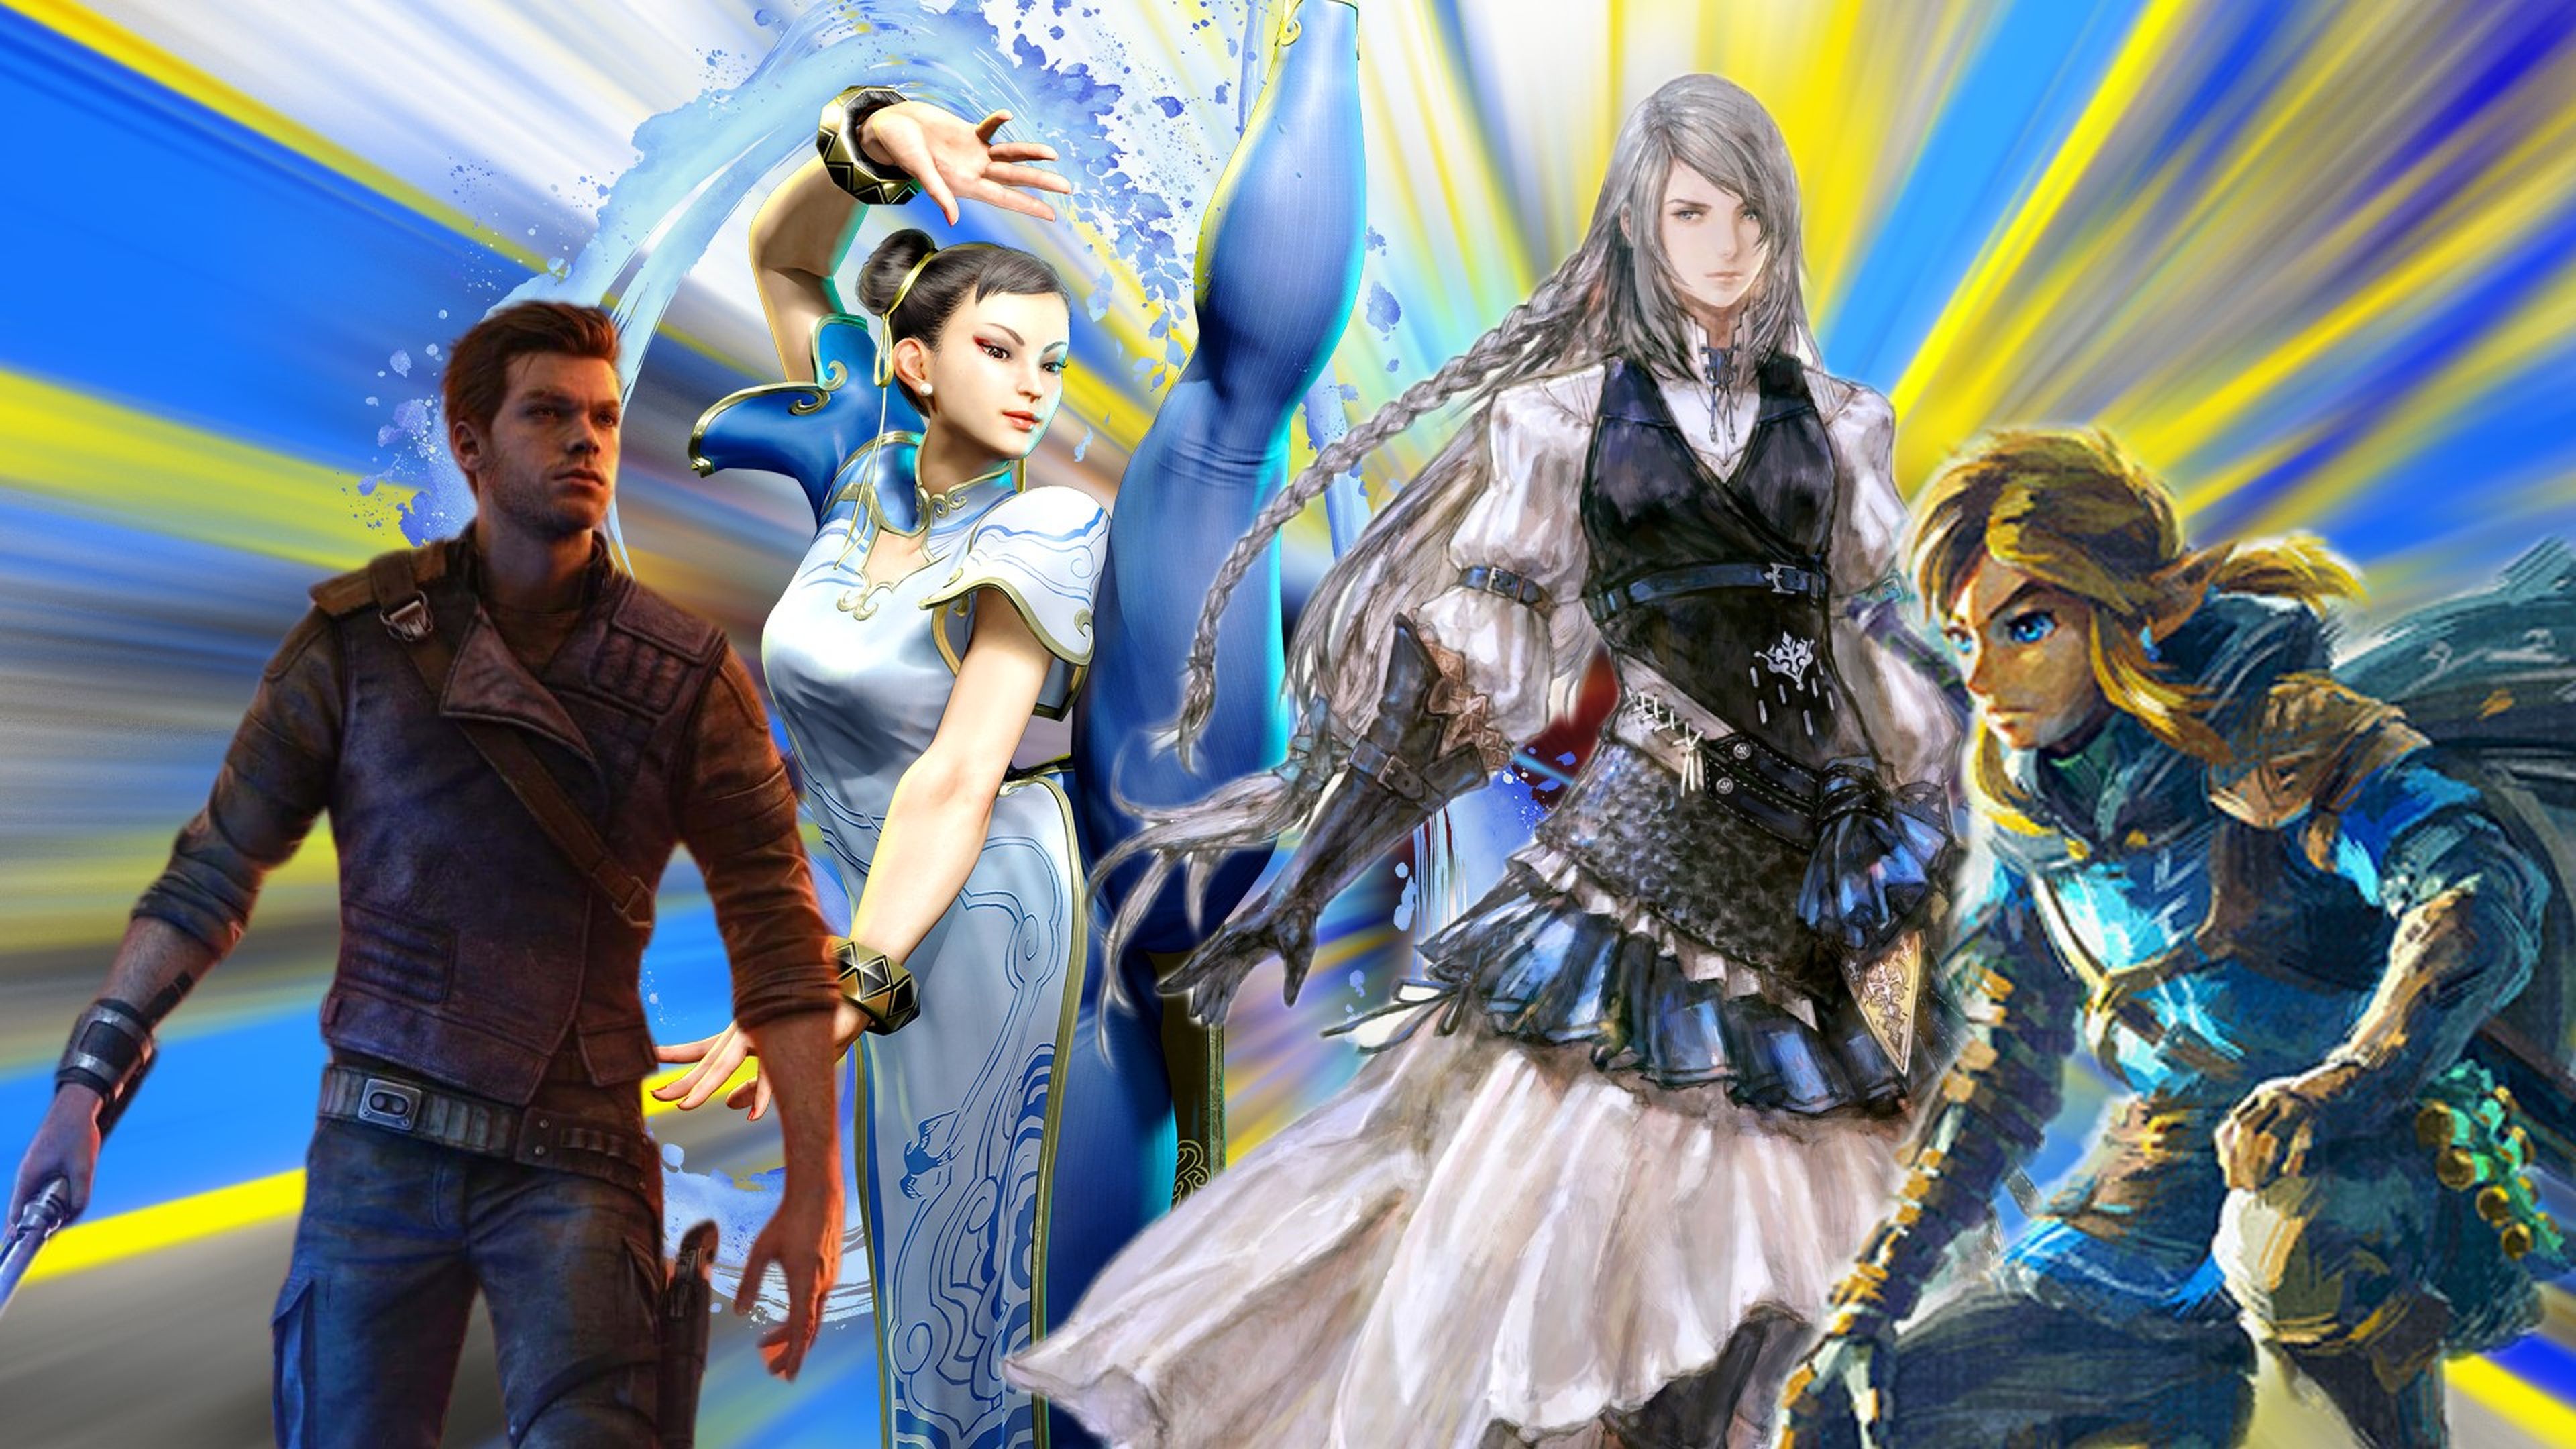 Por qué Final Fantasy XVI no saldrá en PS4? Sus creadores lo dejan